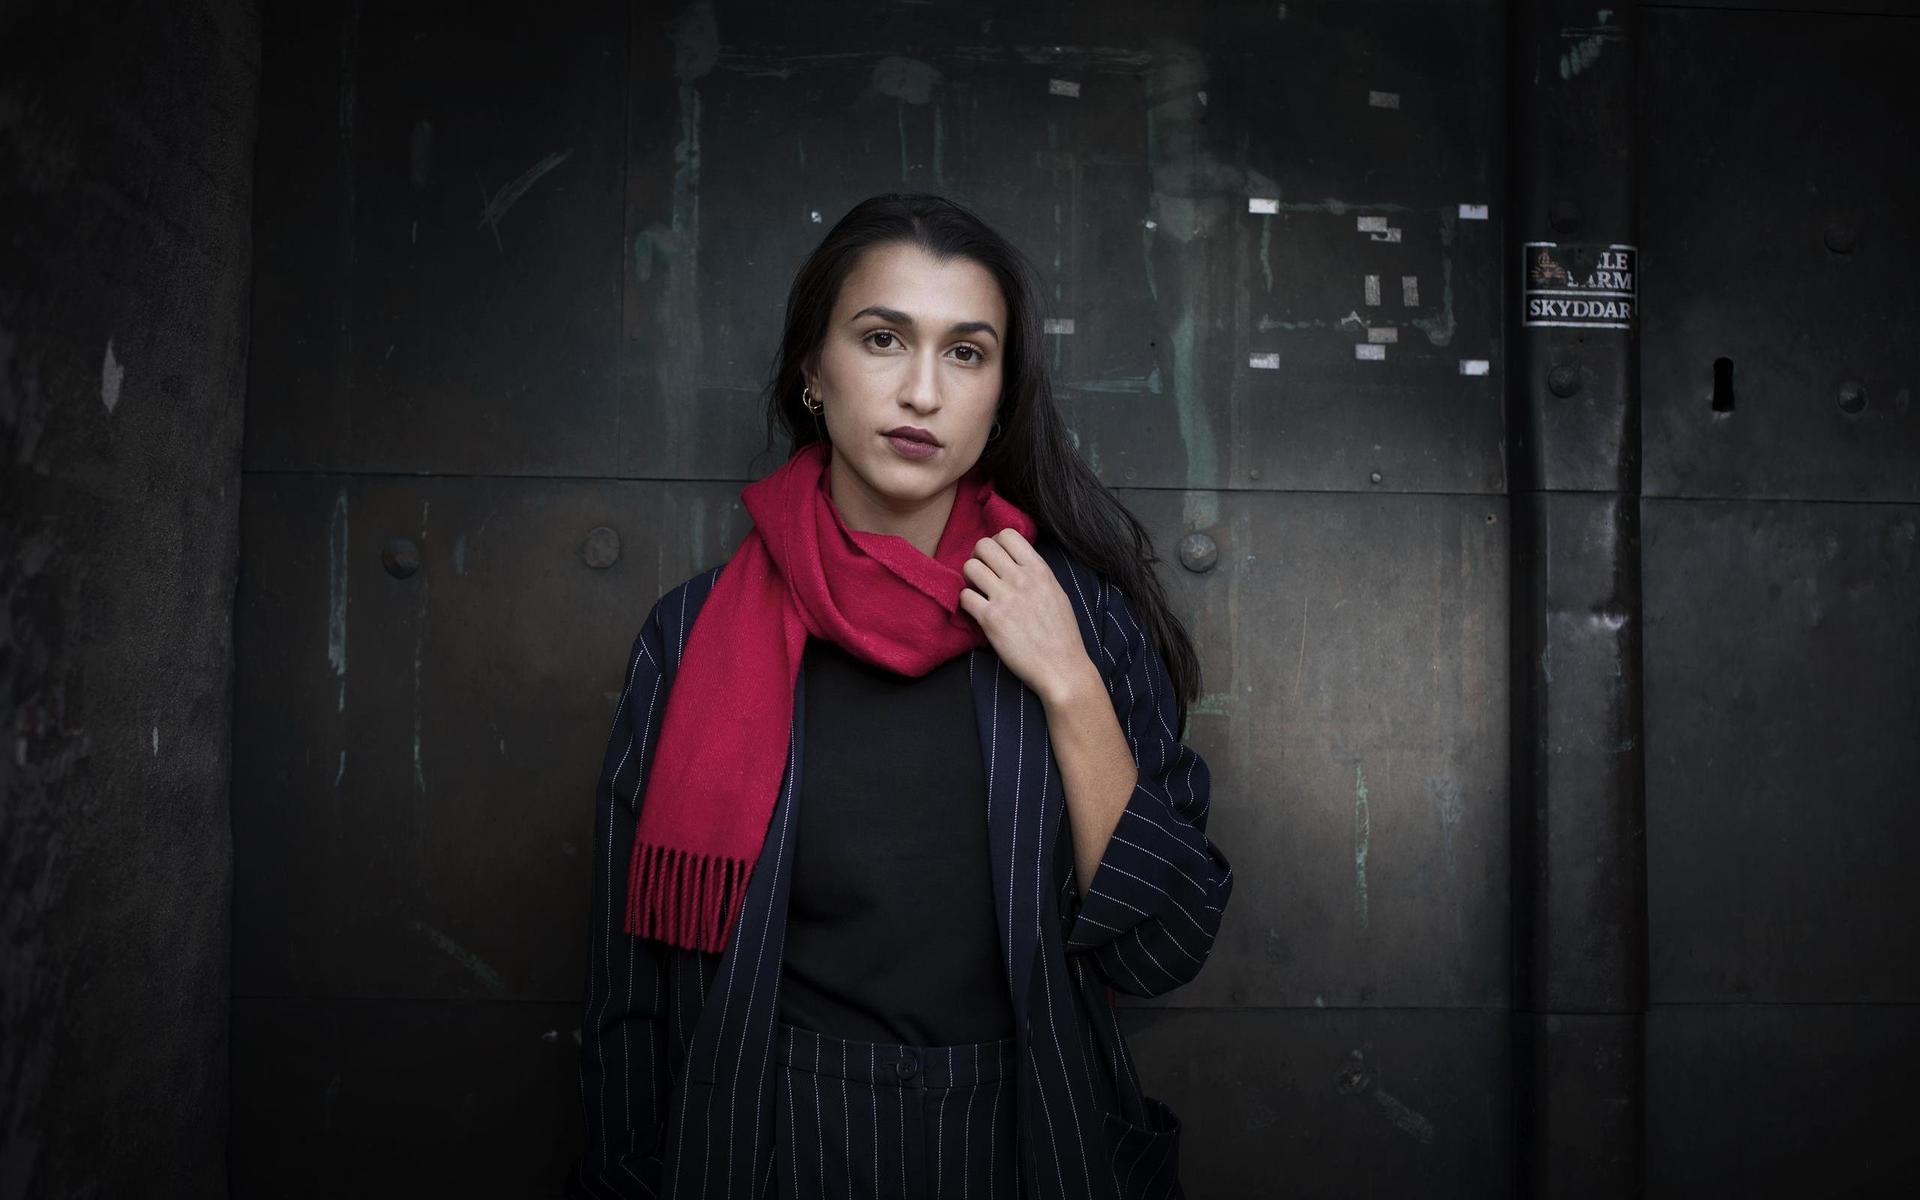 Kritikerna har läst ”Ya Leila” som en skildring av kulturellt utanförskap. För Donia Saleh handlar den mer om svenskhet. ”Den handlar om att befinna sig i en vit kontext, om det svenska snarare än det utländska.”